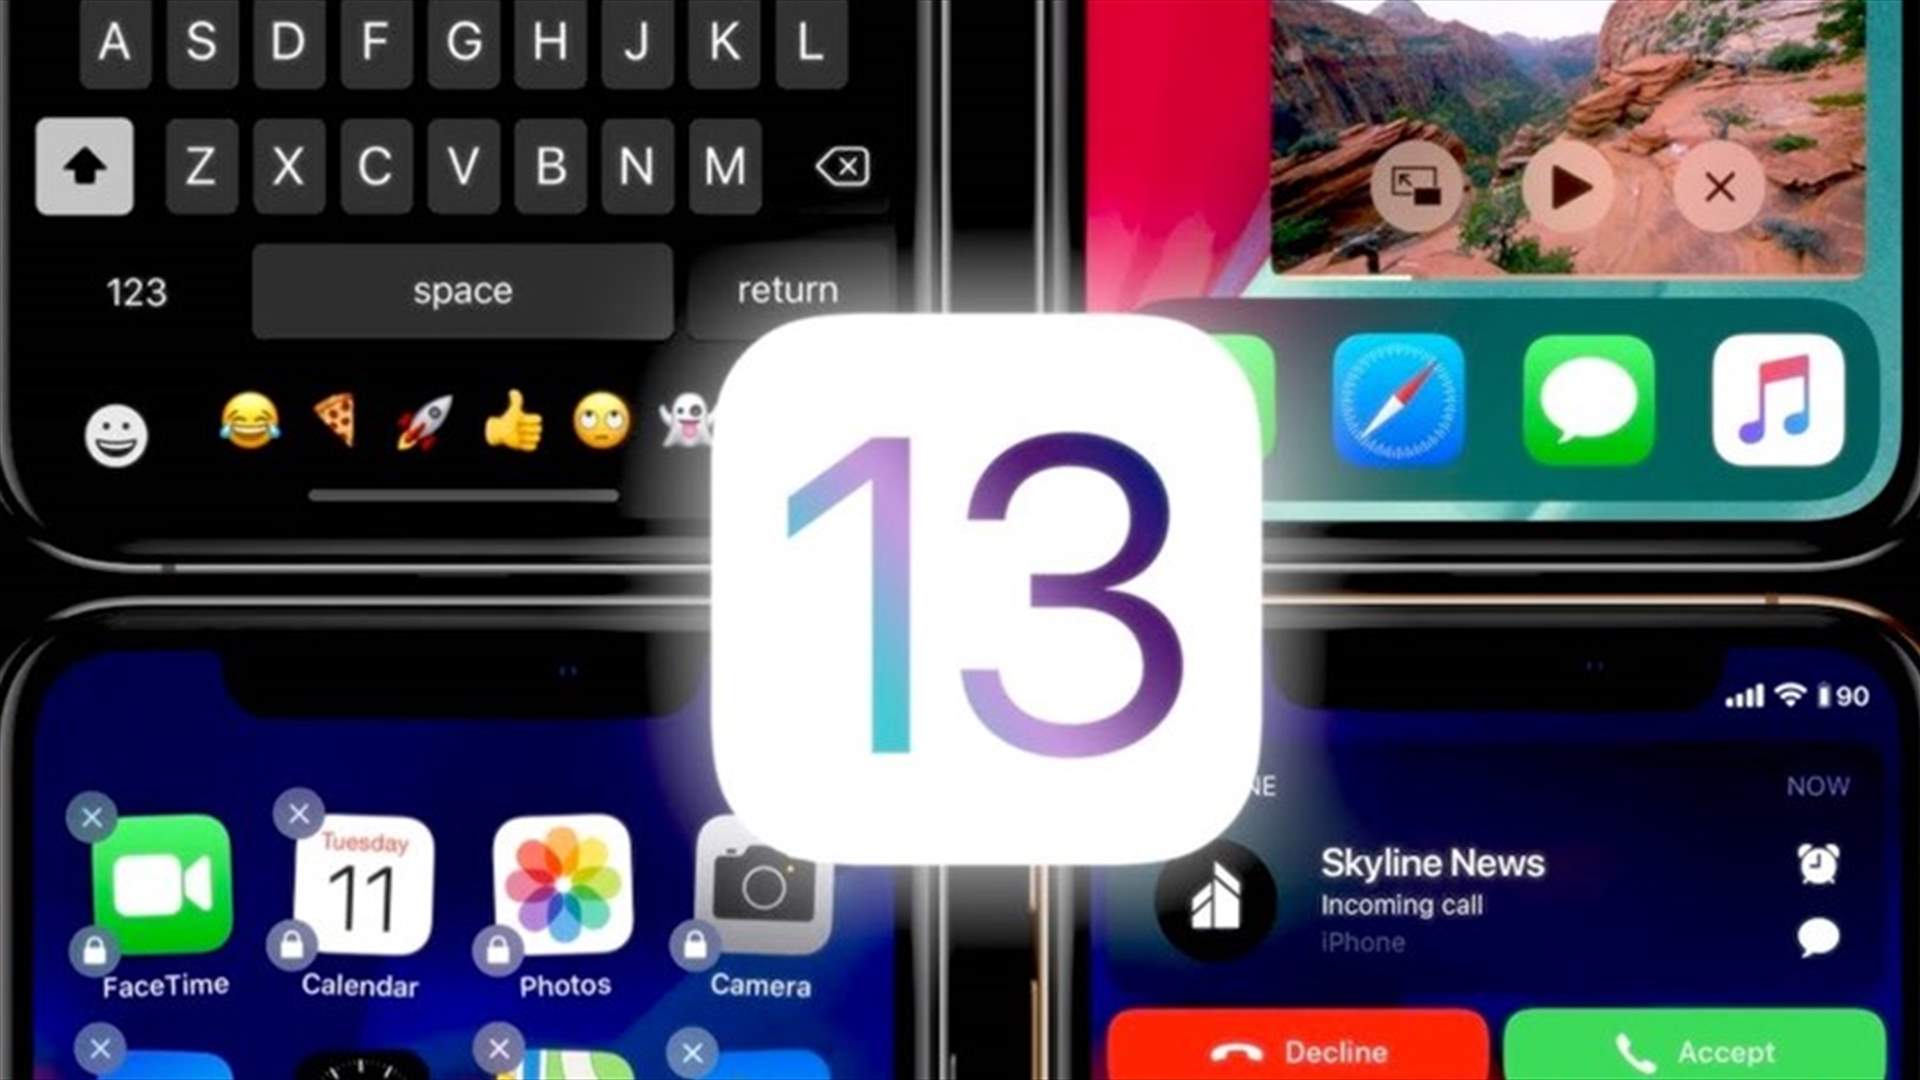 موعد إطلاق نظام iOS 13 لهواتف آيفون... هذا ما يجب عليكم معرفته قبل تحميله